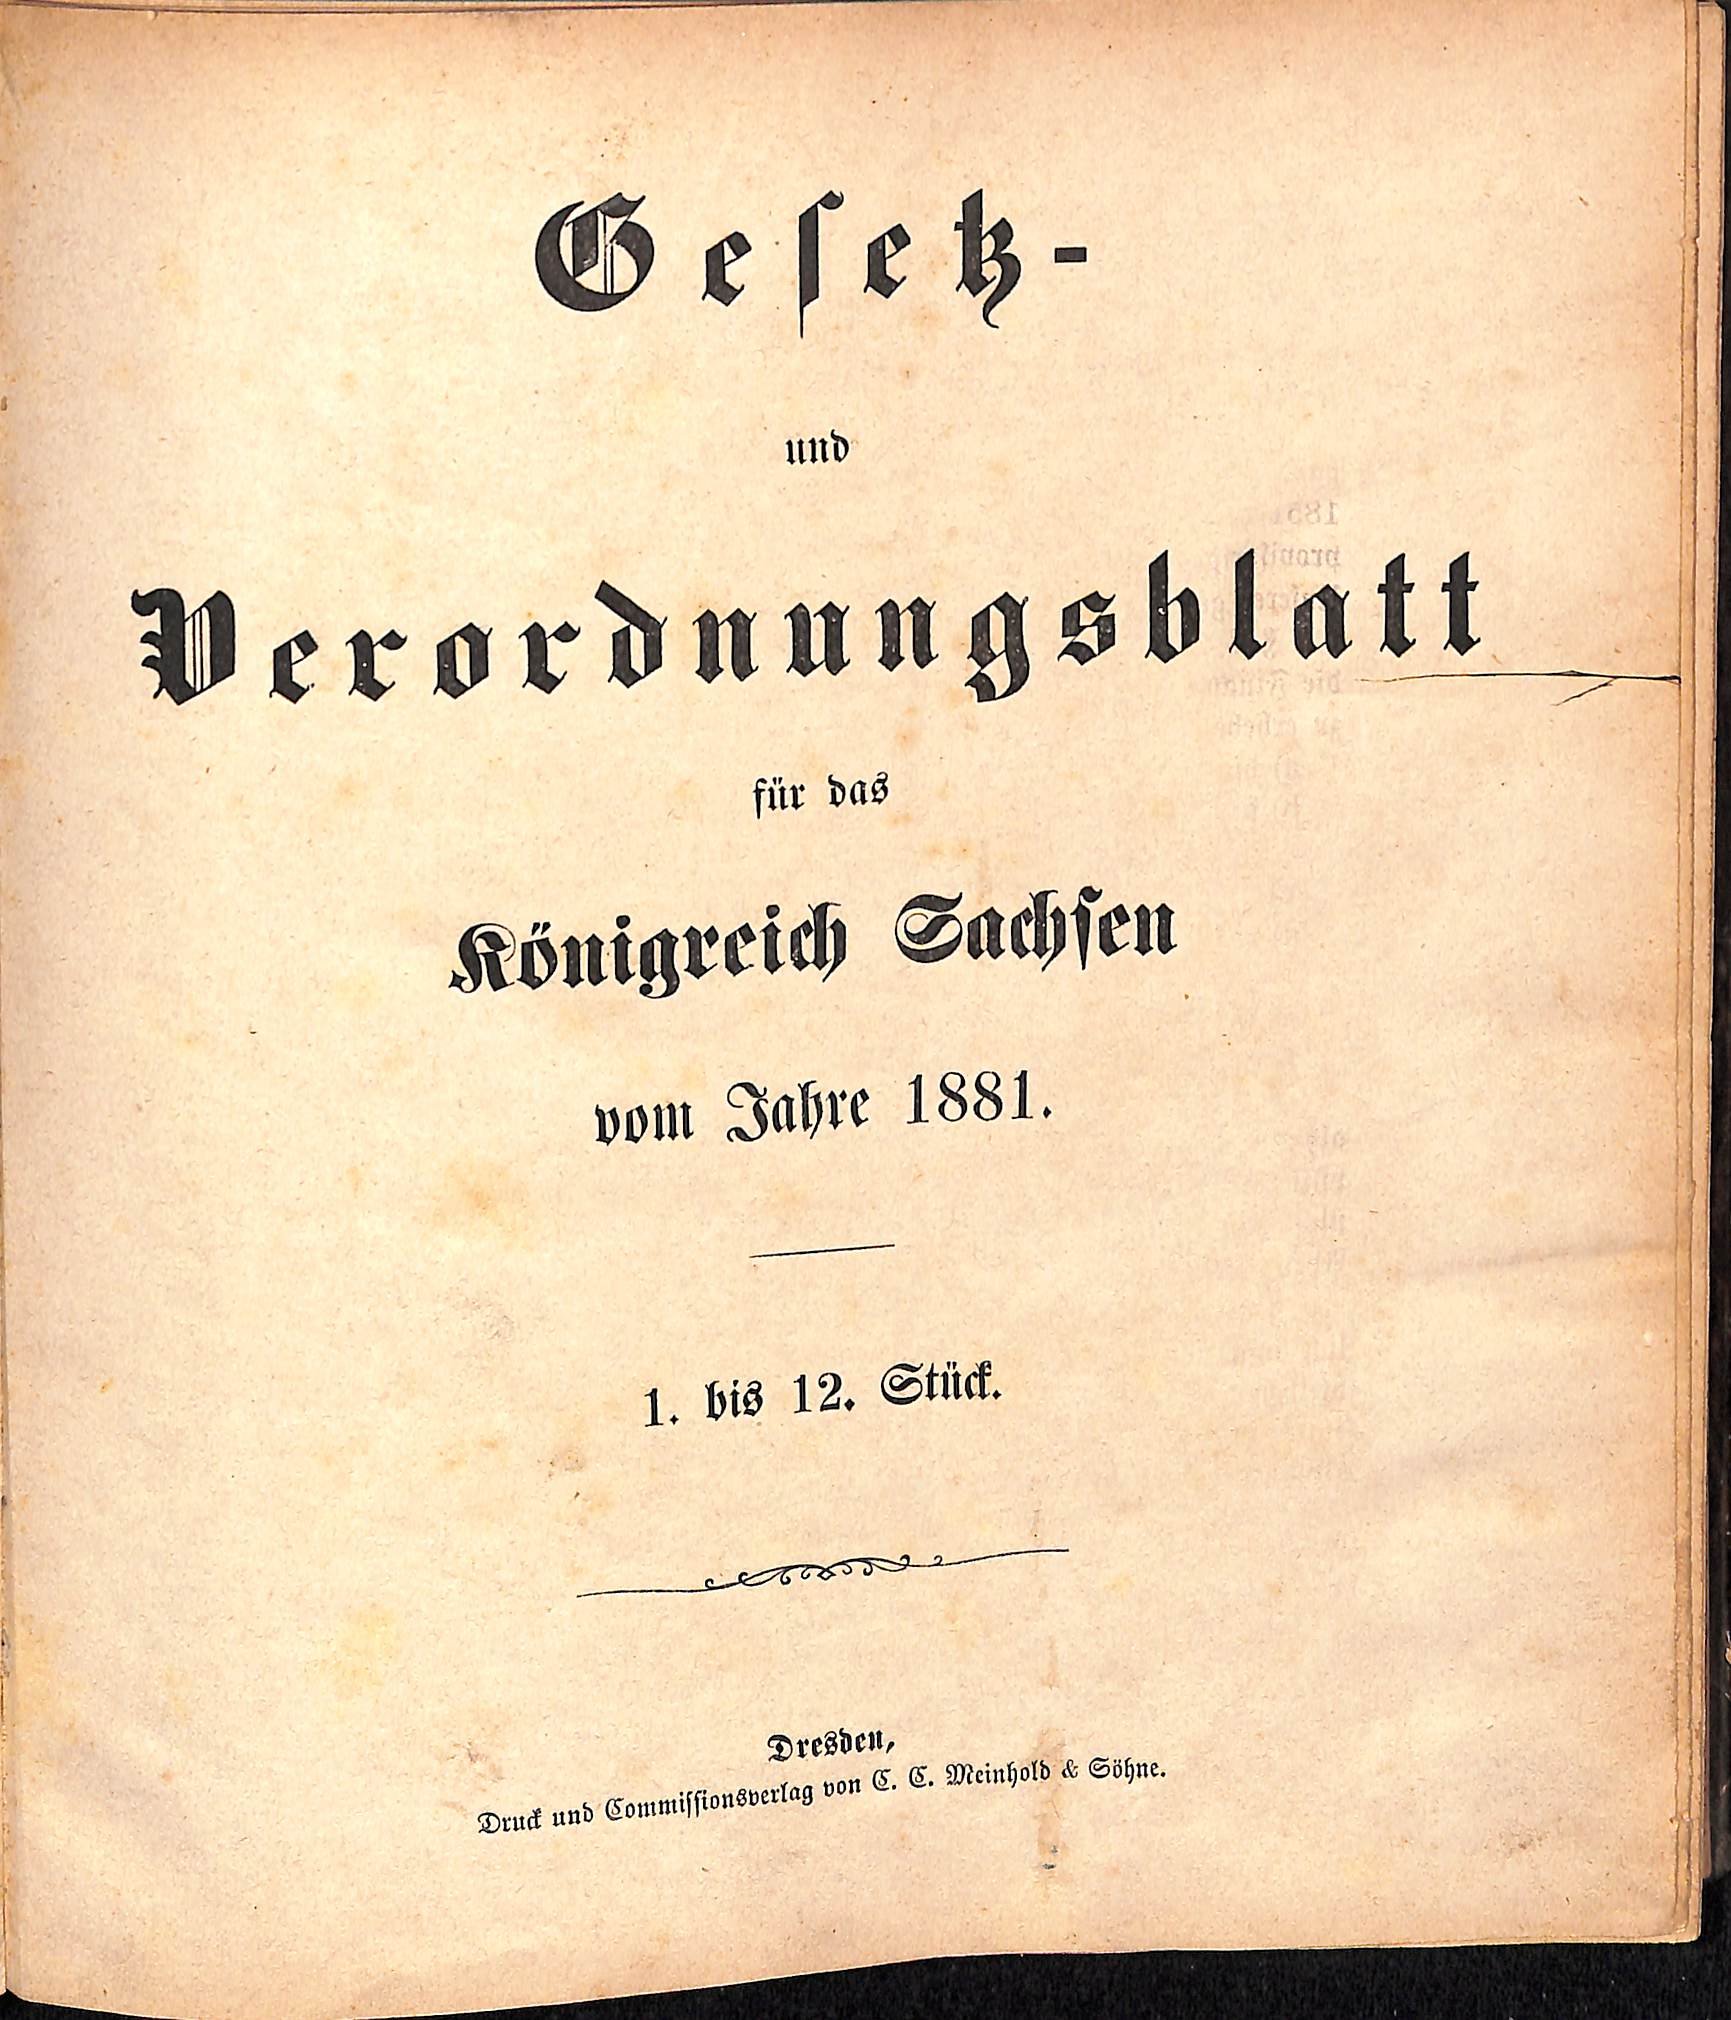 Gesetz- und Verordnungsblatt für das Königreich Sachsen vom Jahre 1881 (HEIMATWELTEN Zwönitz - Raritätensammlung Bruno Gebhardt CC BY-NC-SA)